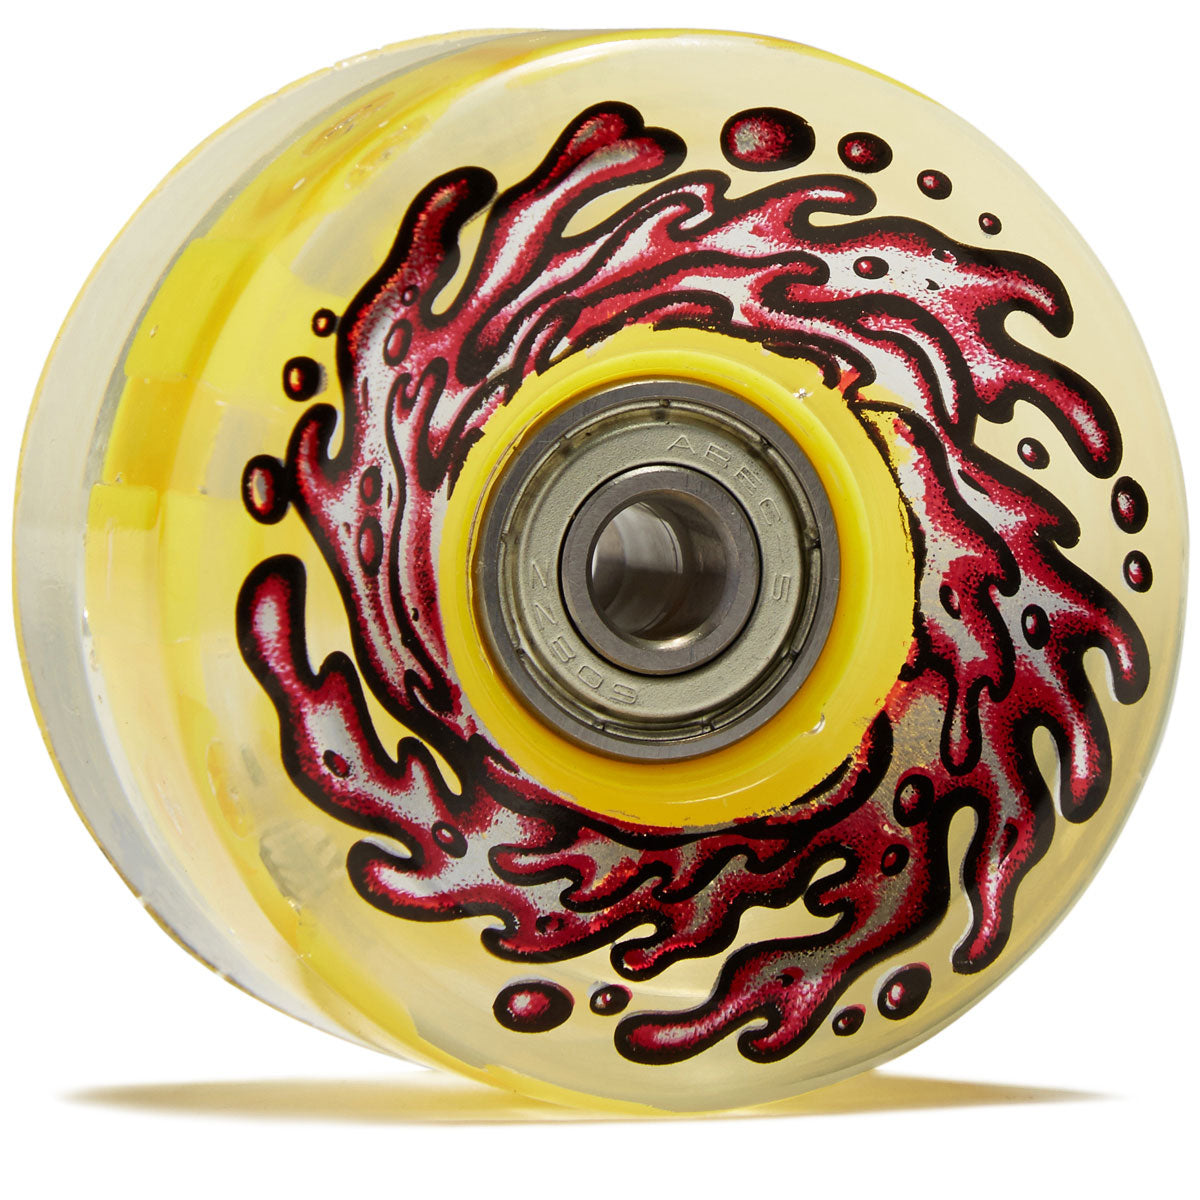 Slime Balls Light Ups OG Slime 78a Skateboard Wheels - Red/Yellow - 60mm image 1